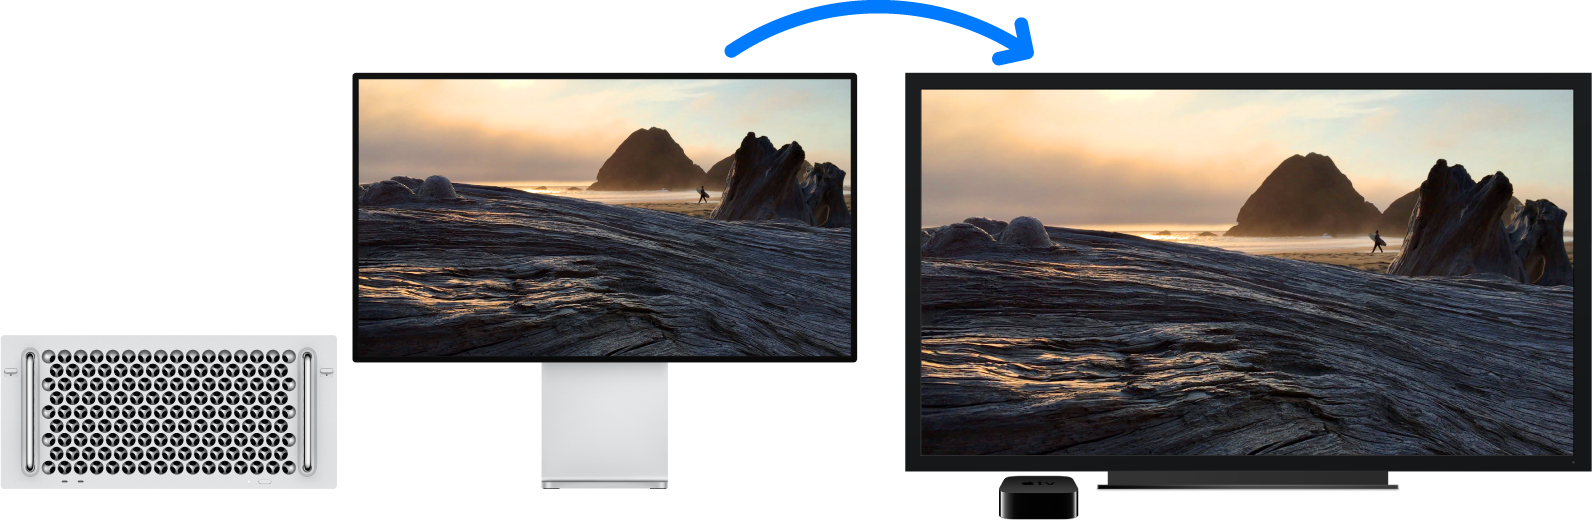 Mac Pro, зображення з якого продубльовано на великому телевізорі HDTV за допомогою Apple TV.